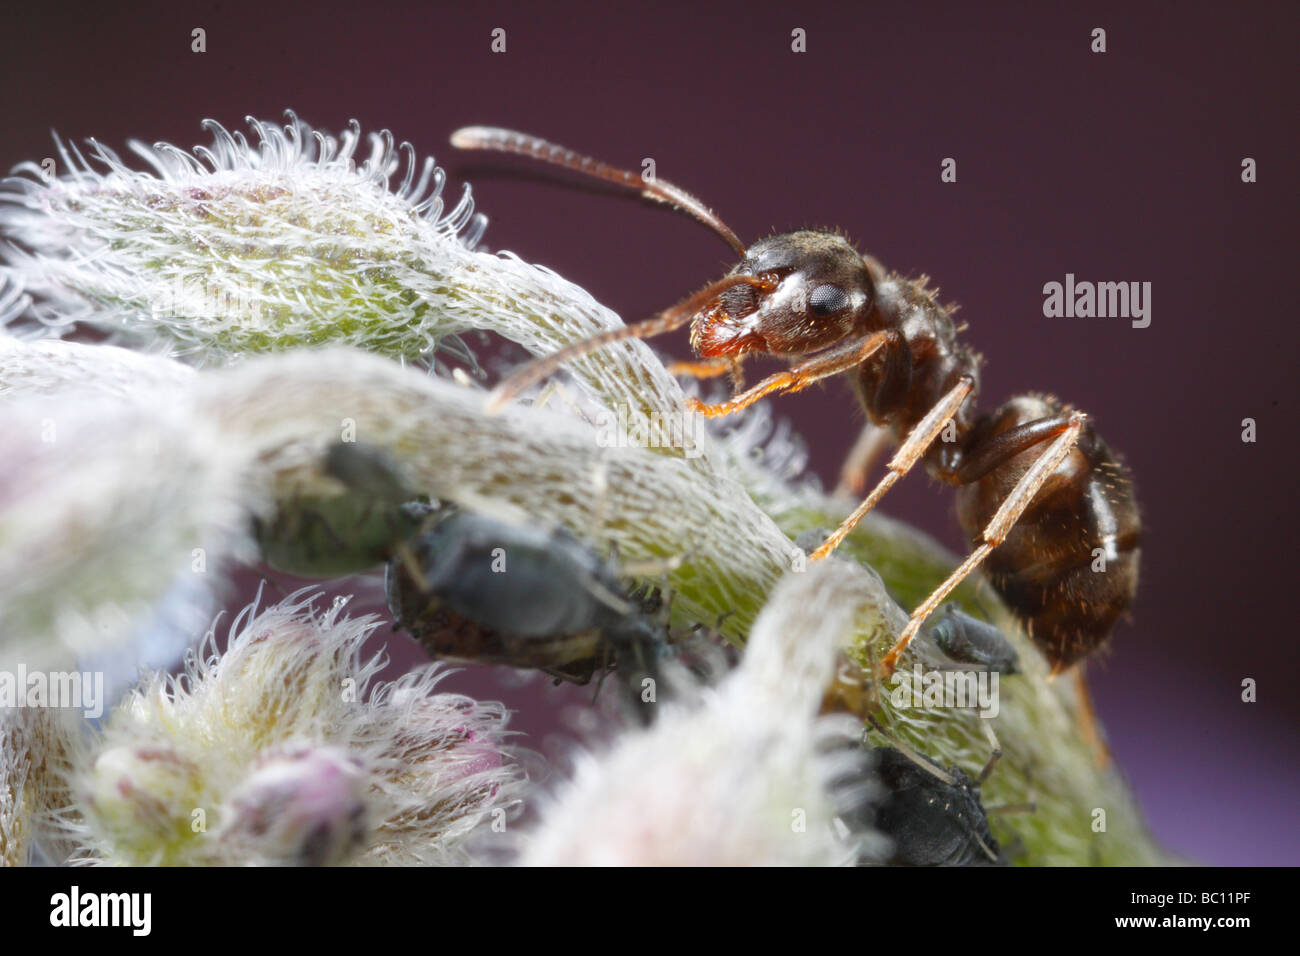 Lasius niger, la hormiga negra de jardín, y los áfidos (Aphis fabae). La flor es una borraja flor o estrella. Foto de stock